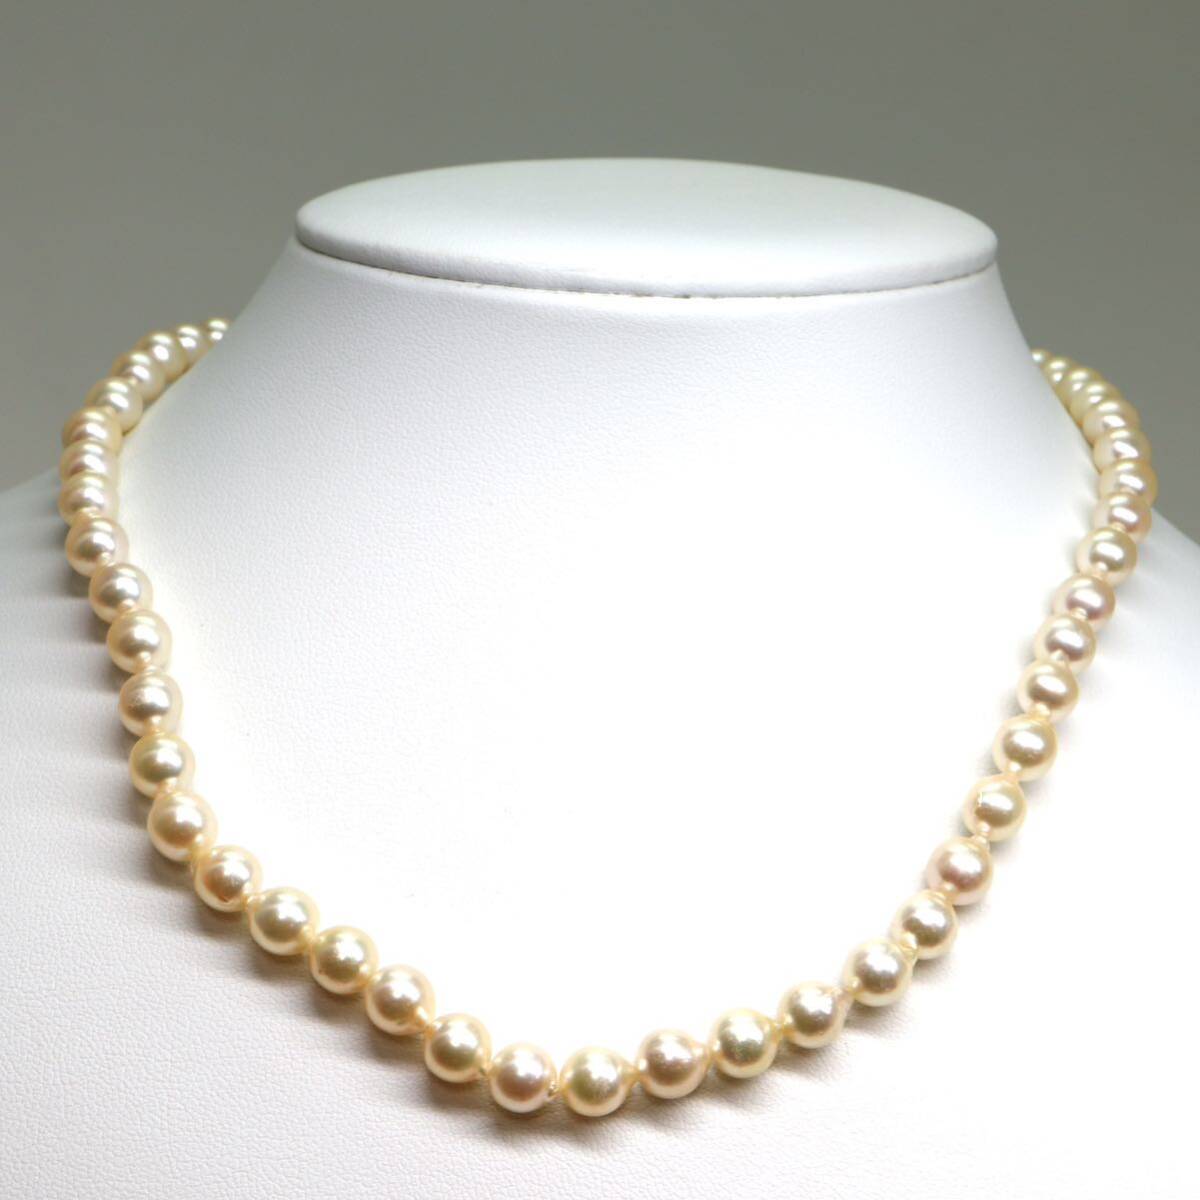 《アコヤ本真珠ネックレス》M 約6.5-7.0mm珠 25.4g 約41cm pearl necklace ジュエリー jewelry DA0/DA_画像2